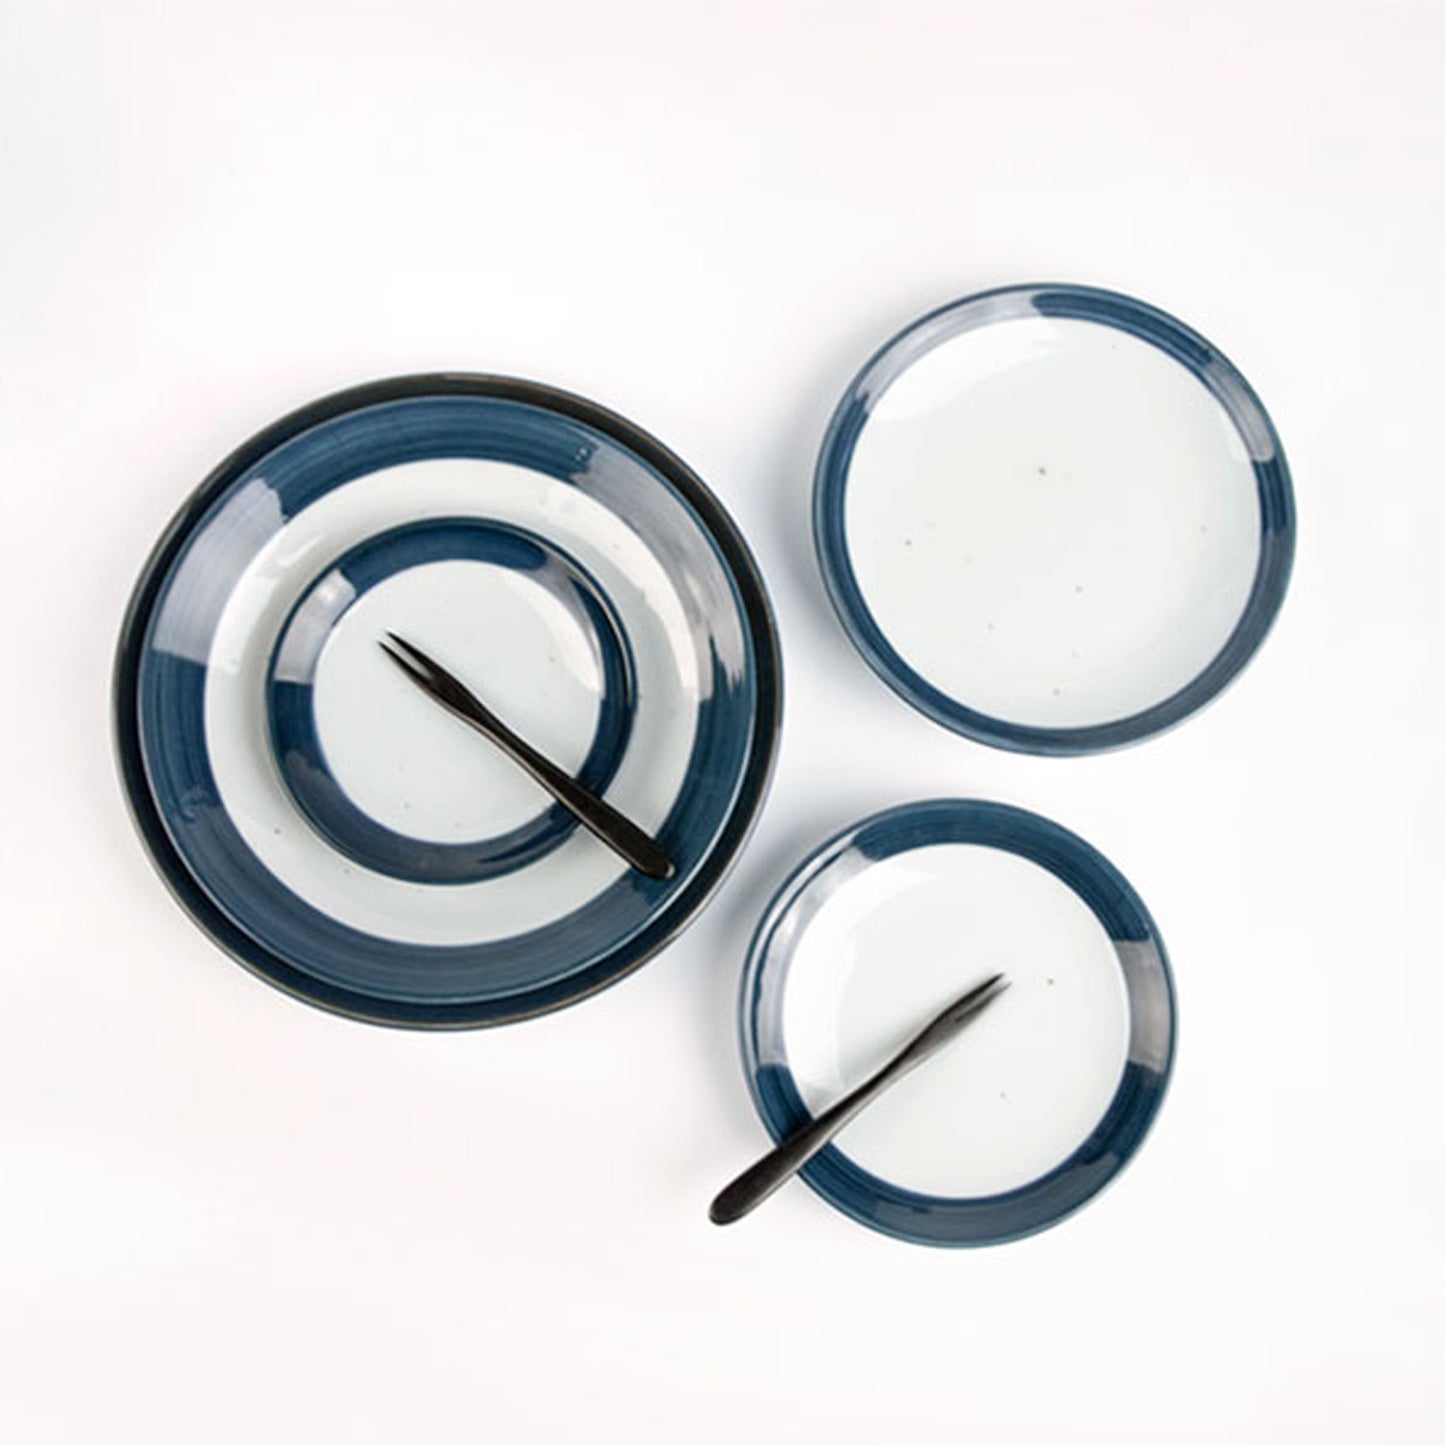 Frontiera Blue Moon Appetizer Plate (Size 1) 15cm (1pc/4pcs Set) 𝟏𝟓% 𝐎𝐅𝐅